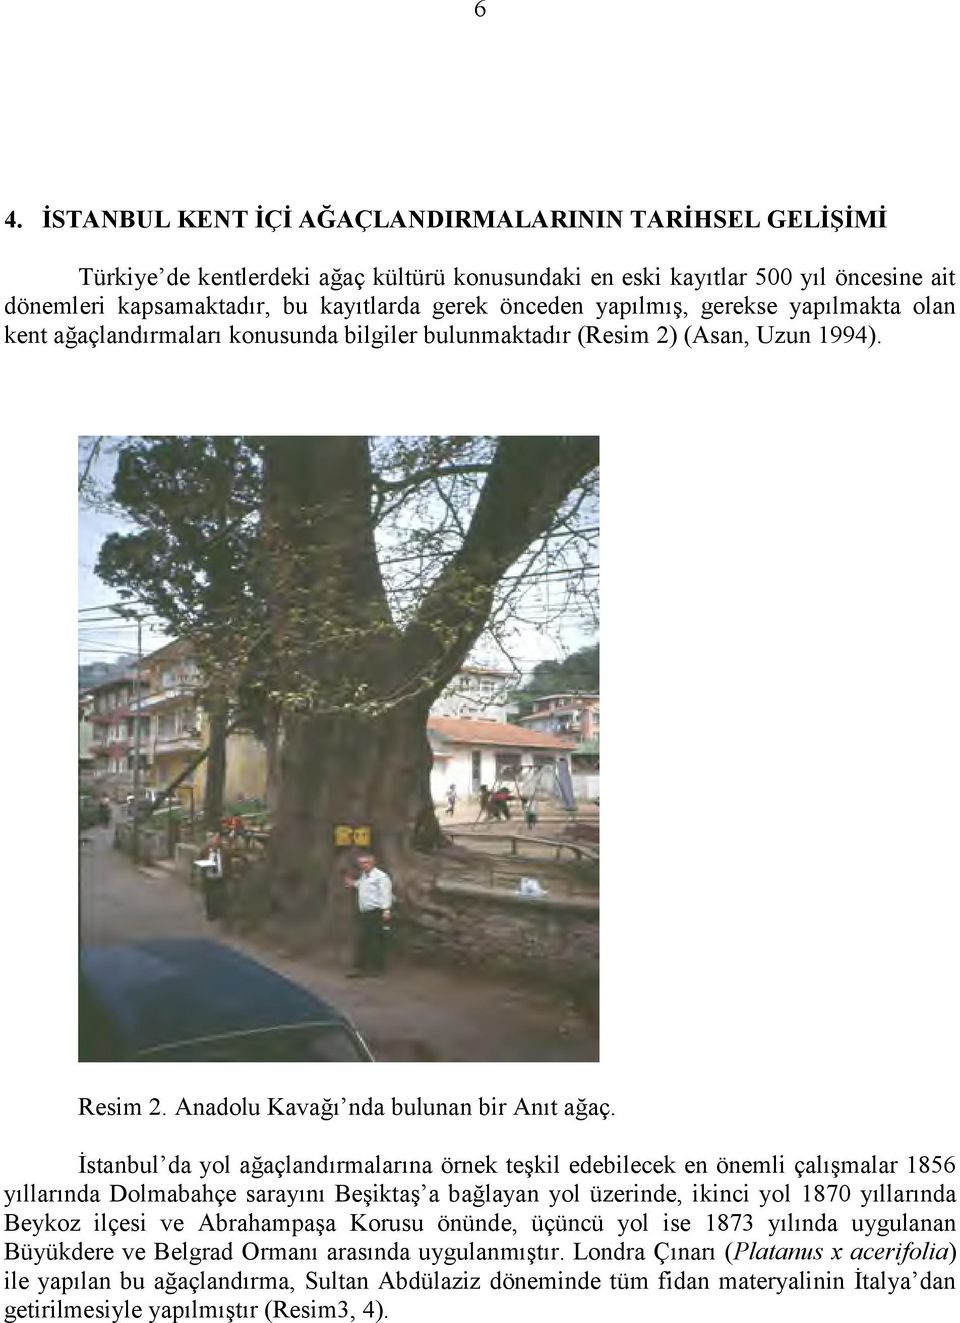 İstanbul da yol ağaçlandırmalarına örnek teşkil edebilecek en önemli çalışmalar 1856 yıllarında Dolmabahçe sarayını Beşiktaş a bağlayan yol üzerinde, ikinci yol 1870 yıllarında Beykoz ilçesi ve